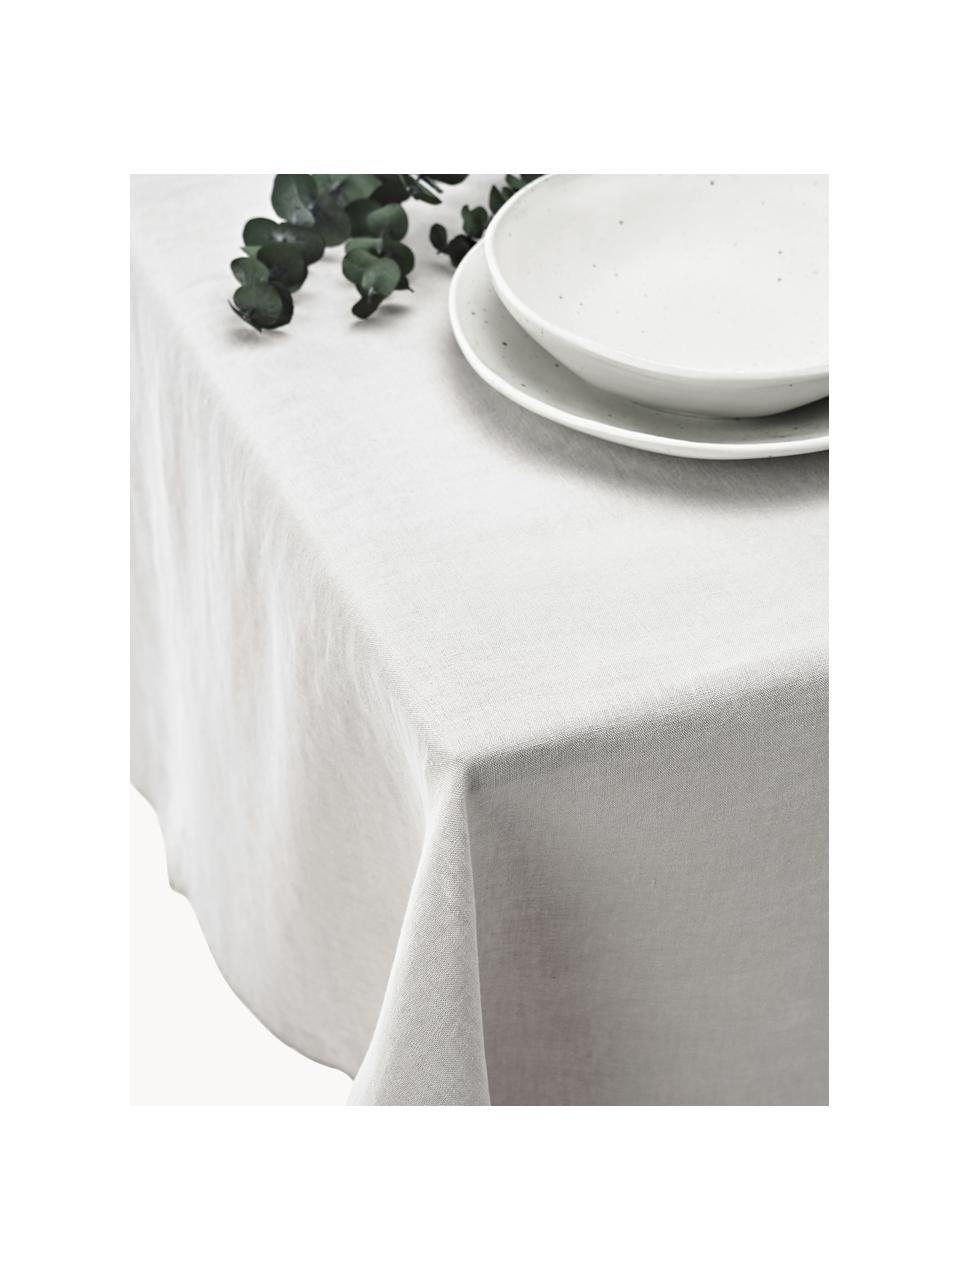 Leinen-Tischdecke Kennedy mit Umkettelung, 100 % gewaschenes Leinen, European Flax zertifiziert, Hellgrau, Beige, 6-8 Personen (B 140 x L 250 cm)